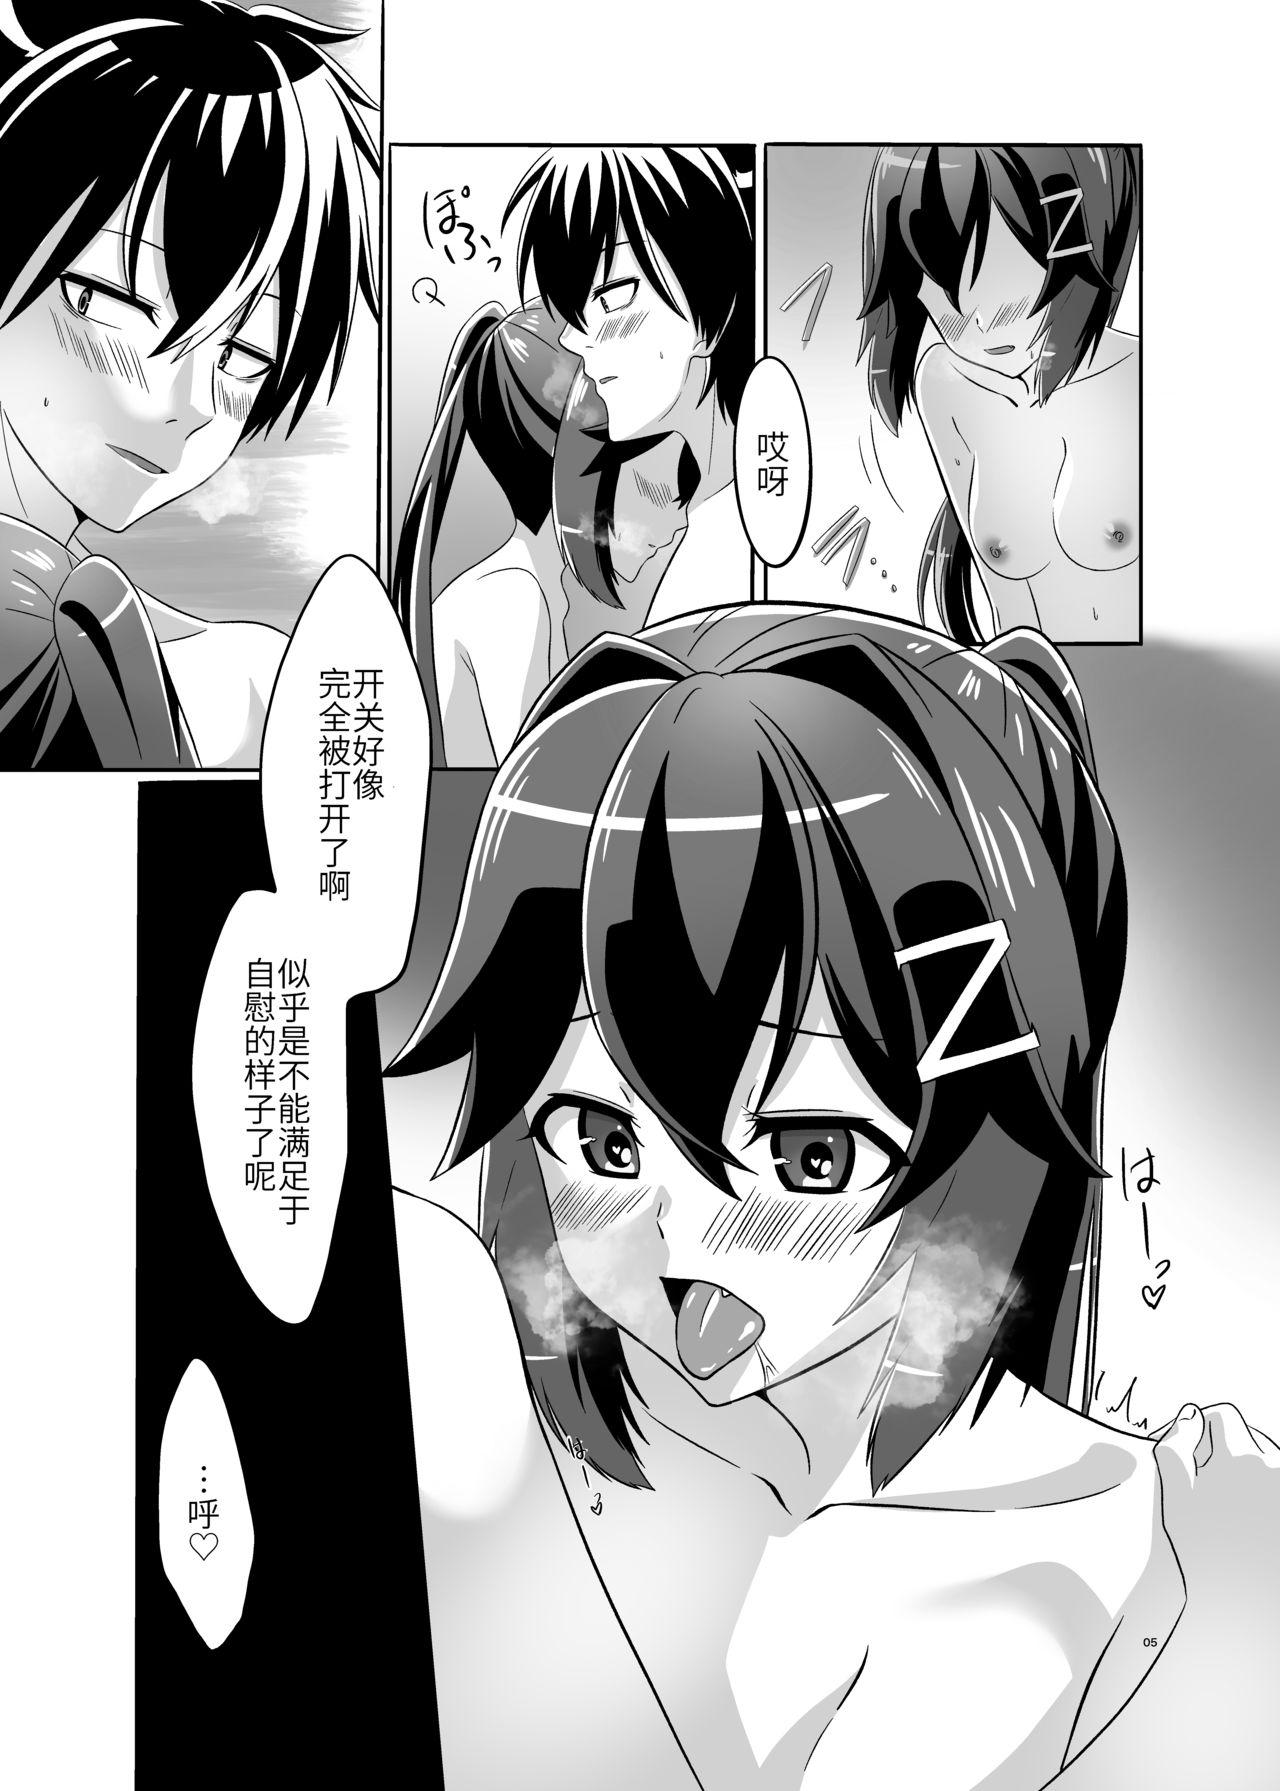 Close Up Itsumo no yoru futari no yotogi⑴ - Warship girls Funny - Page 6